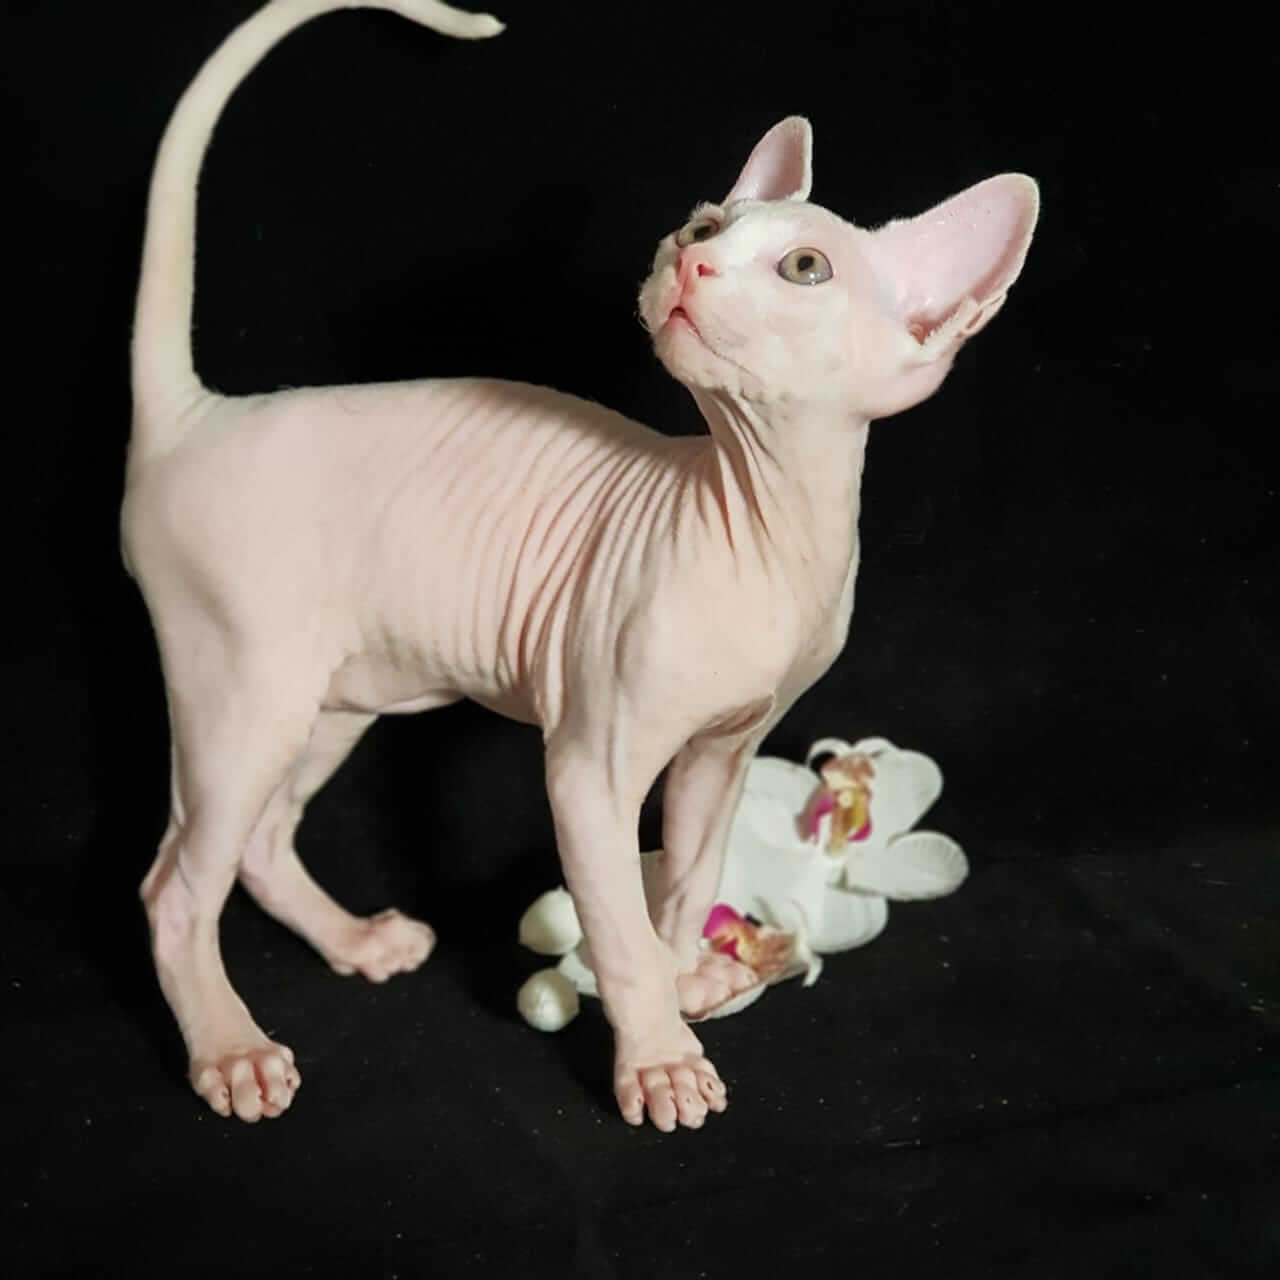 Кимрик (уэльская кошка): описание породы, характер, советы по содержанию и уходу, фото